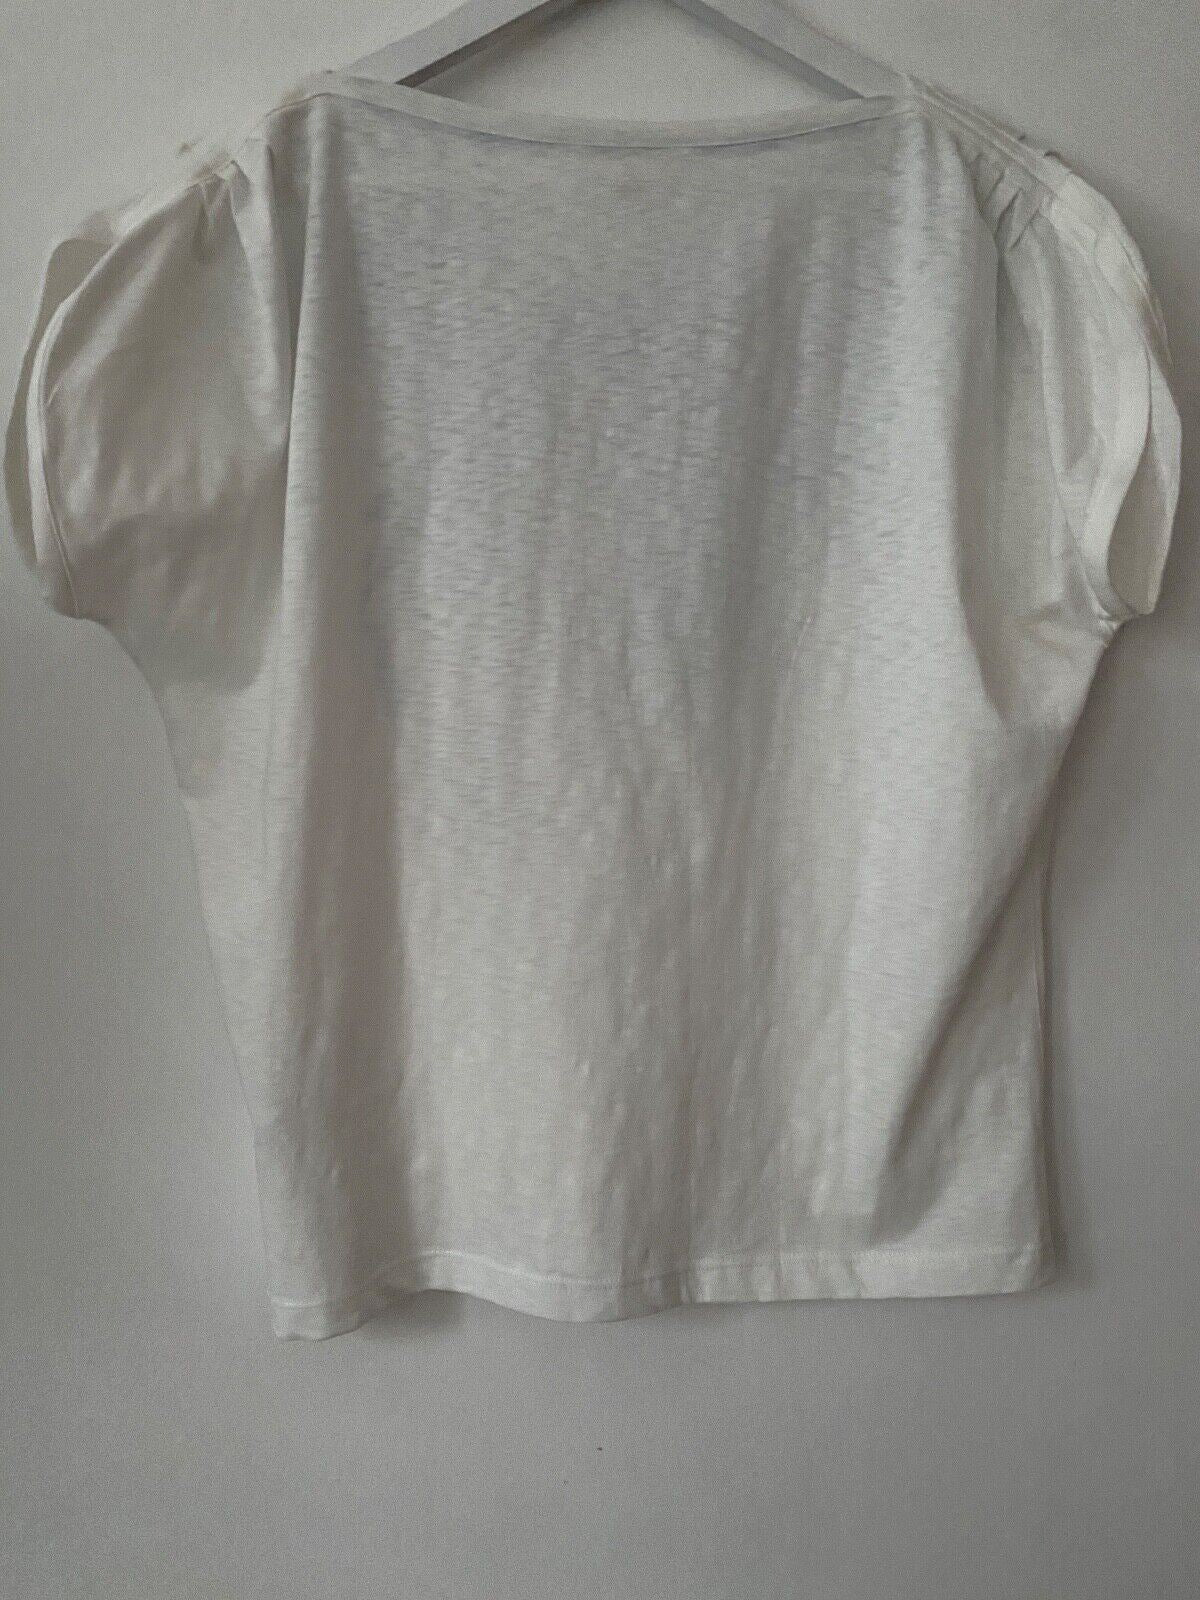 White Stuff Print T-shirt